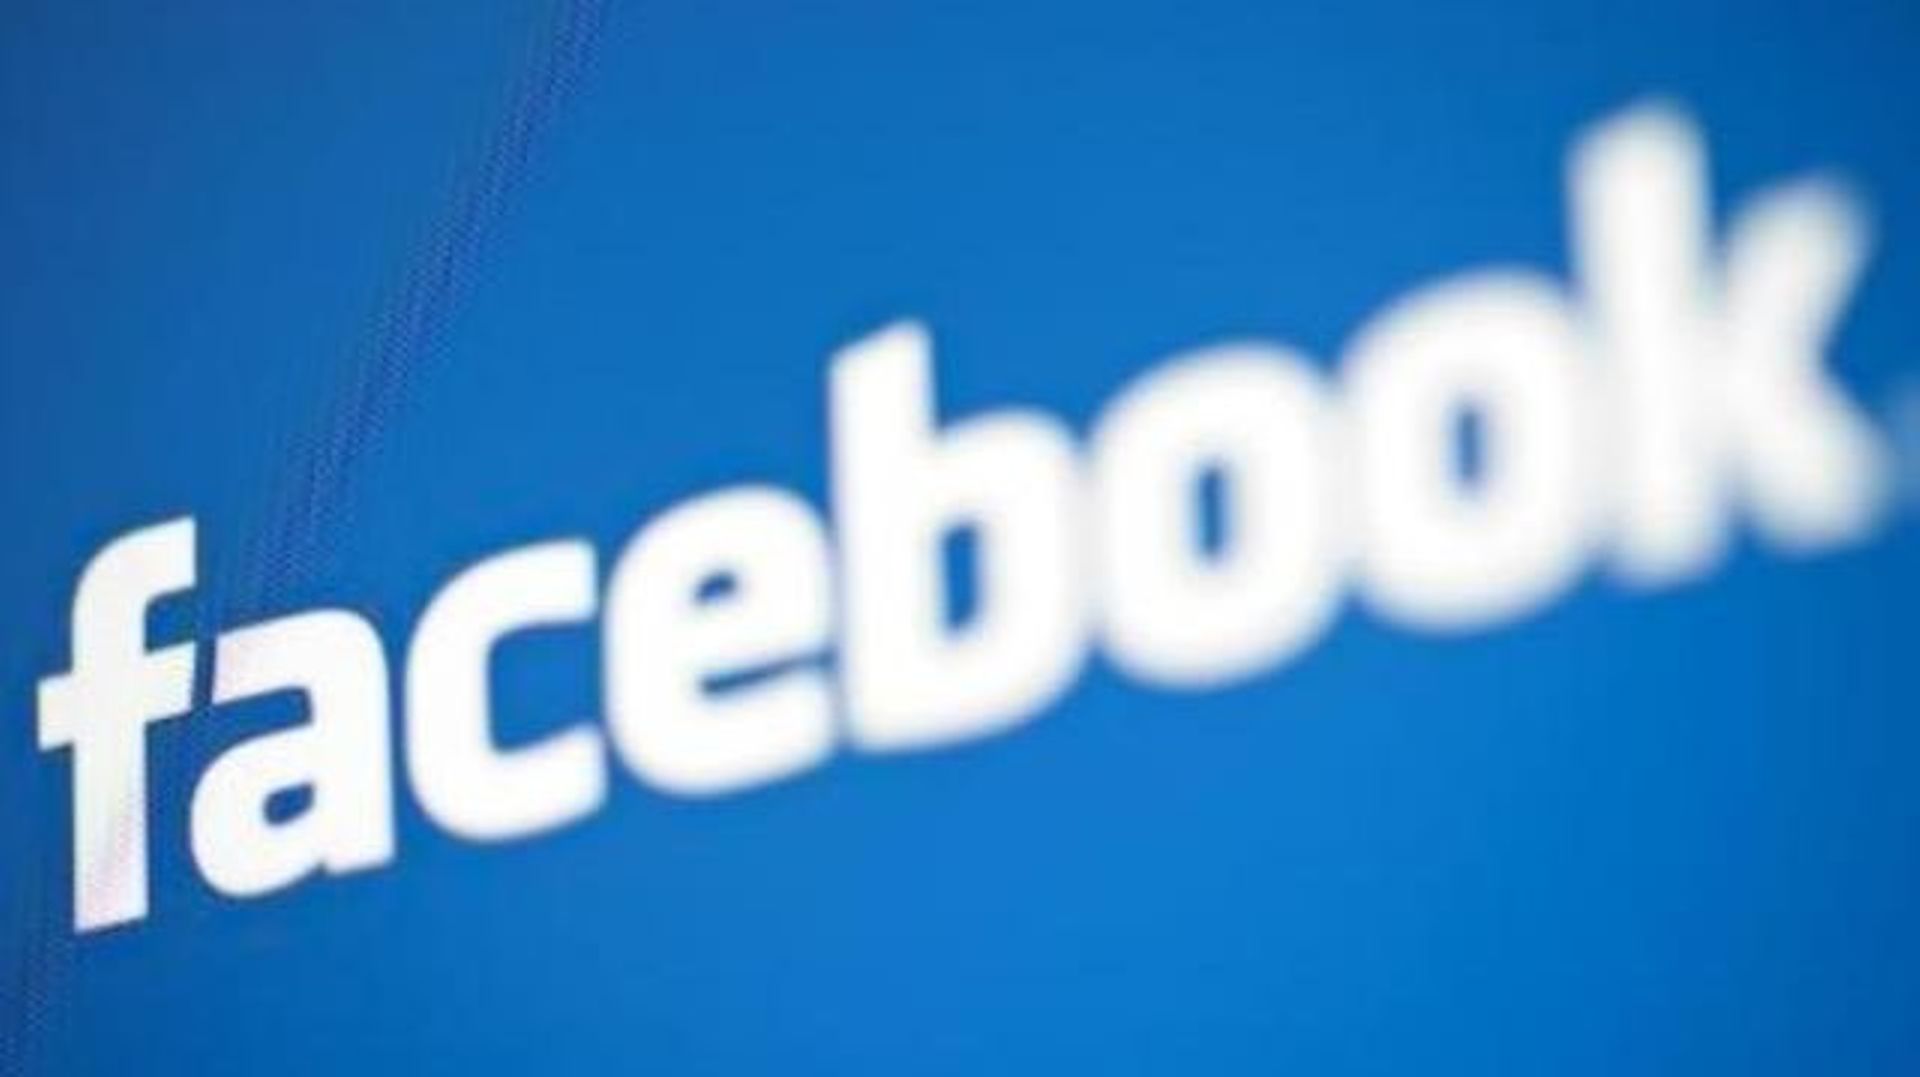 Les membres Facebook peuvent revoir leurs paramètres de confidentialité